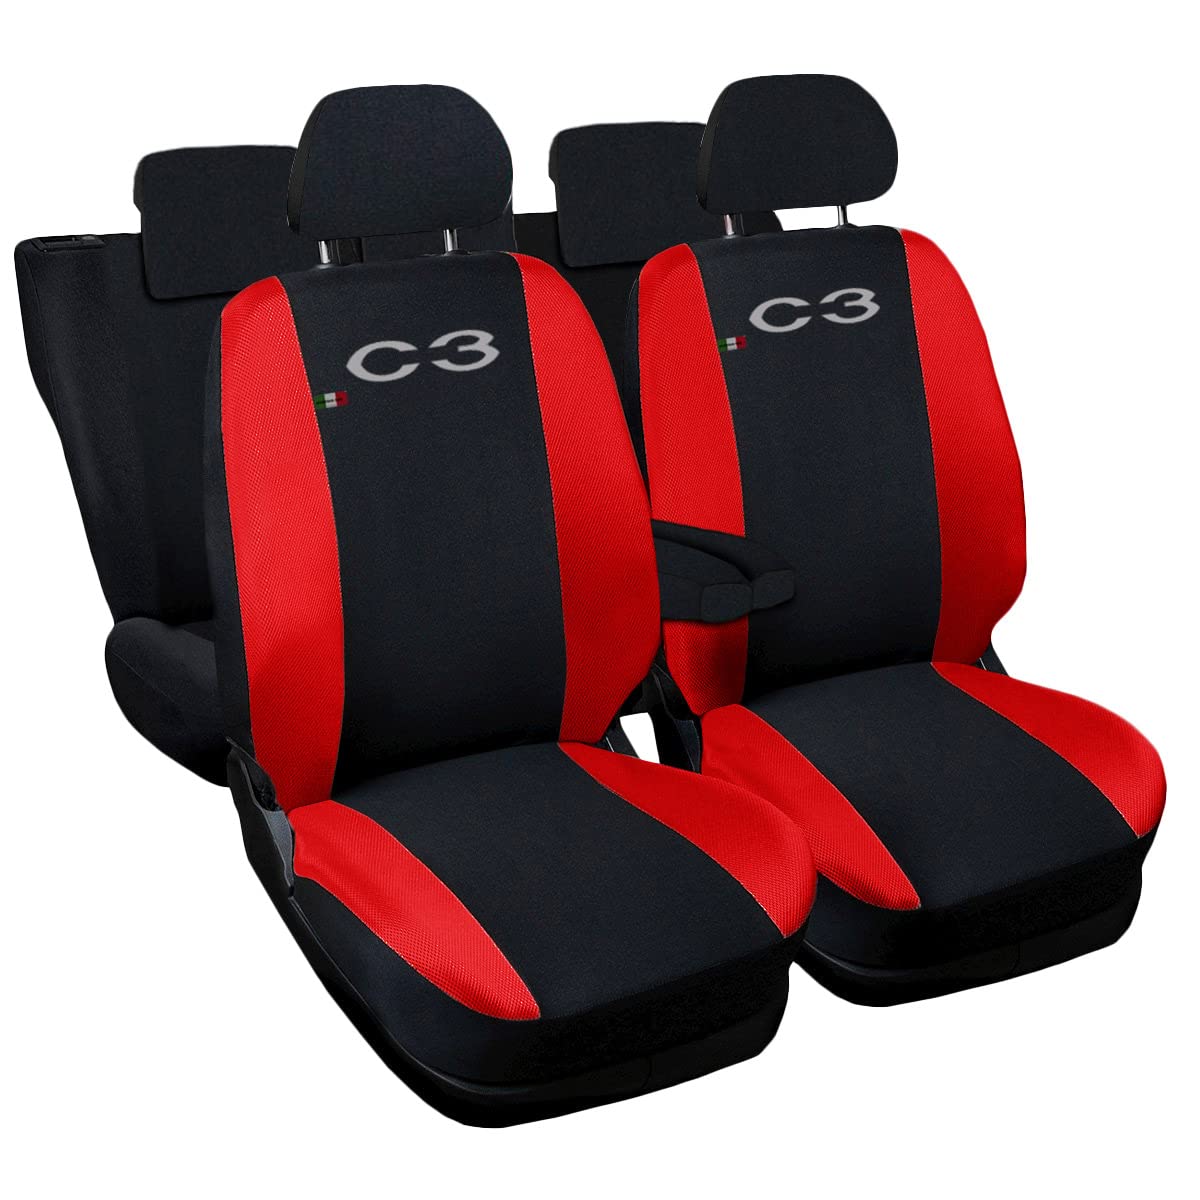 Lupex Shop Autositzbezüge kompatibel mit C3, Made in Italy, Polyestergewebe, kompletter Satz Vorder- und Rücksitze (Schwarz - Rot) von Lupex Shop